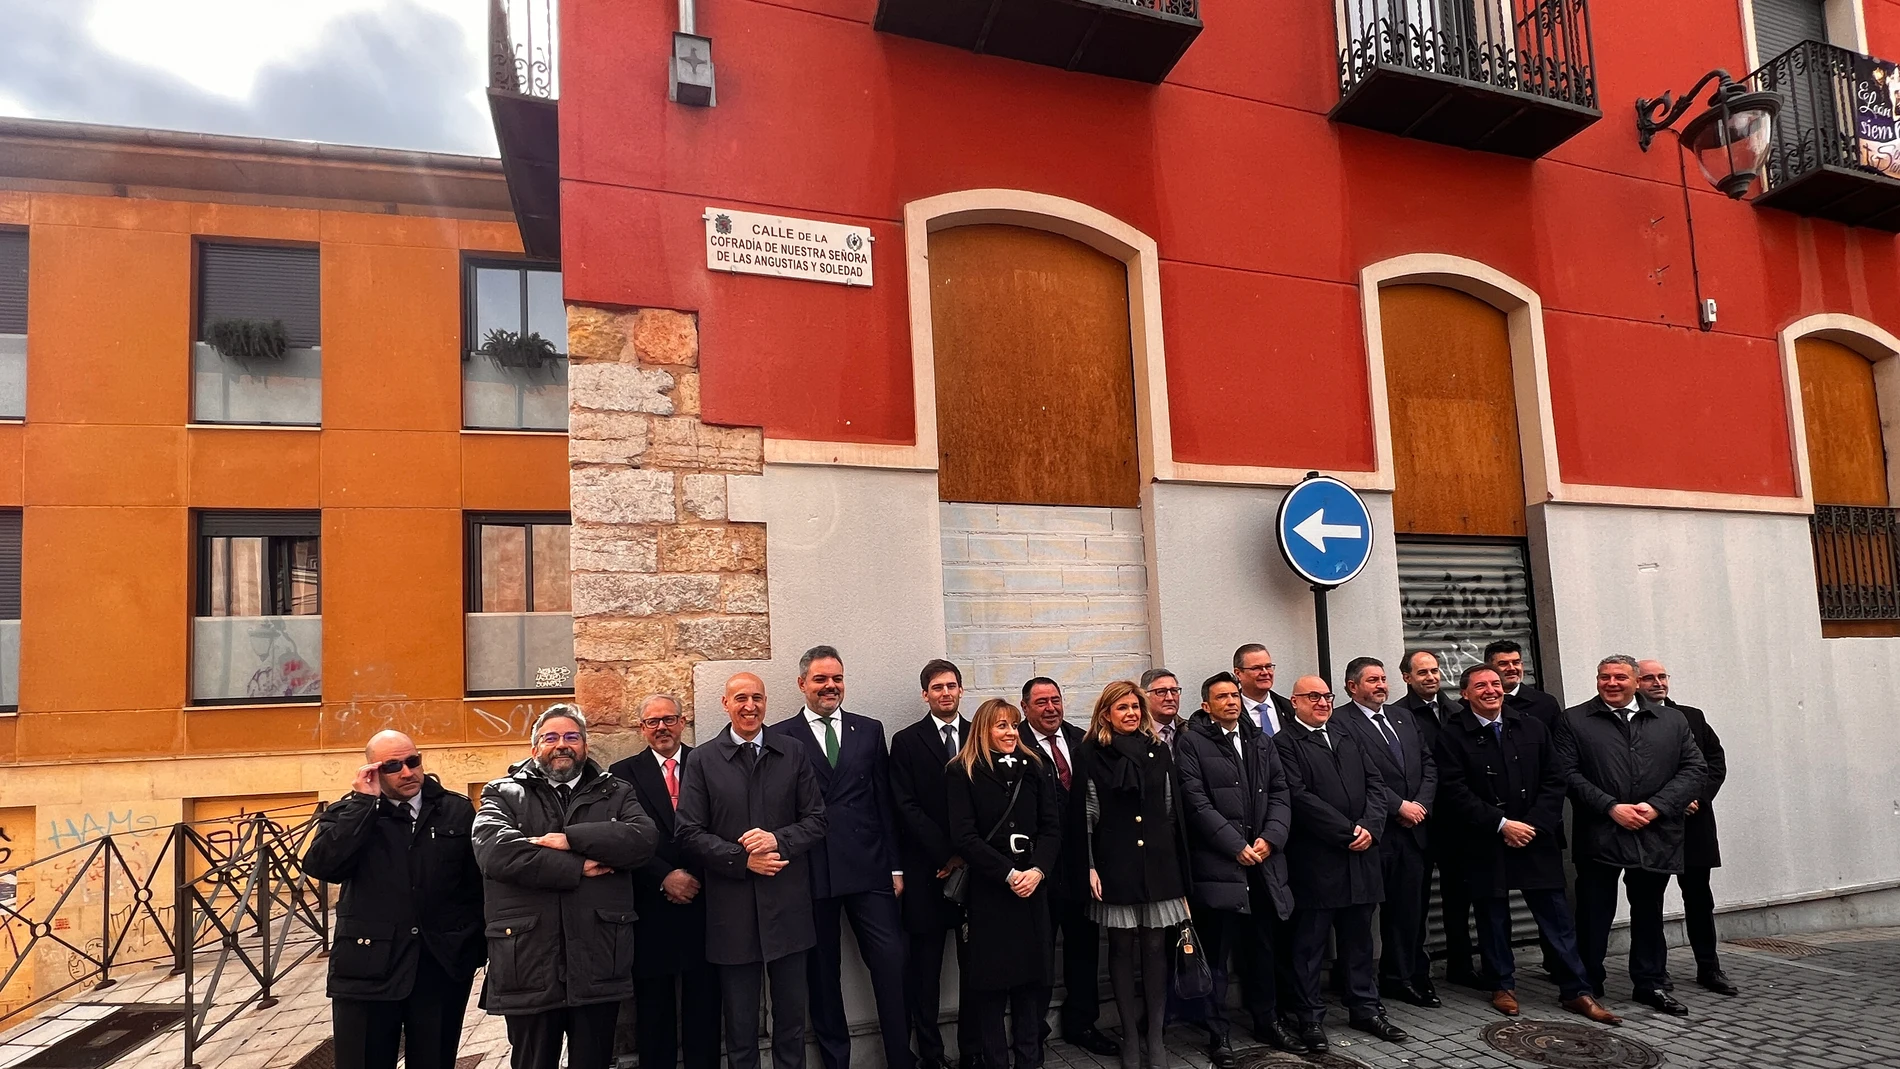 El Ayuntamiento de León dedica una calle a la Cofradía de Nuestra Señora de las Angustias y Soledad